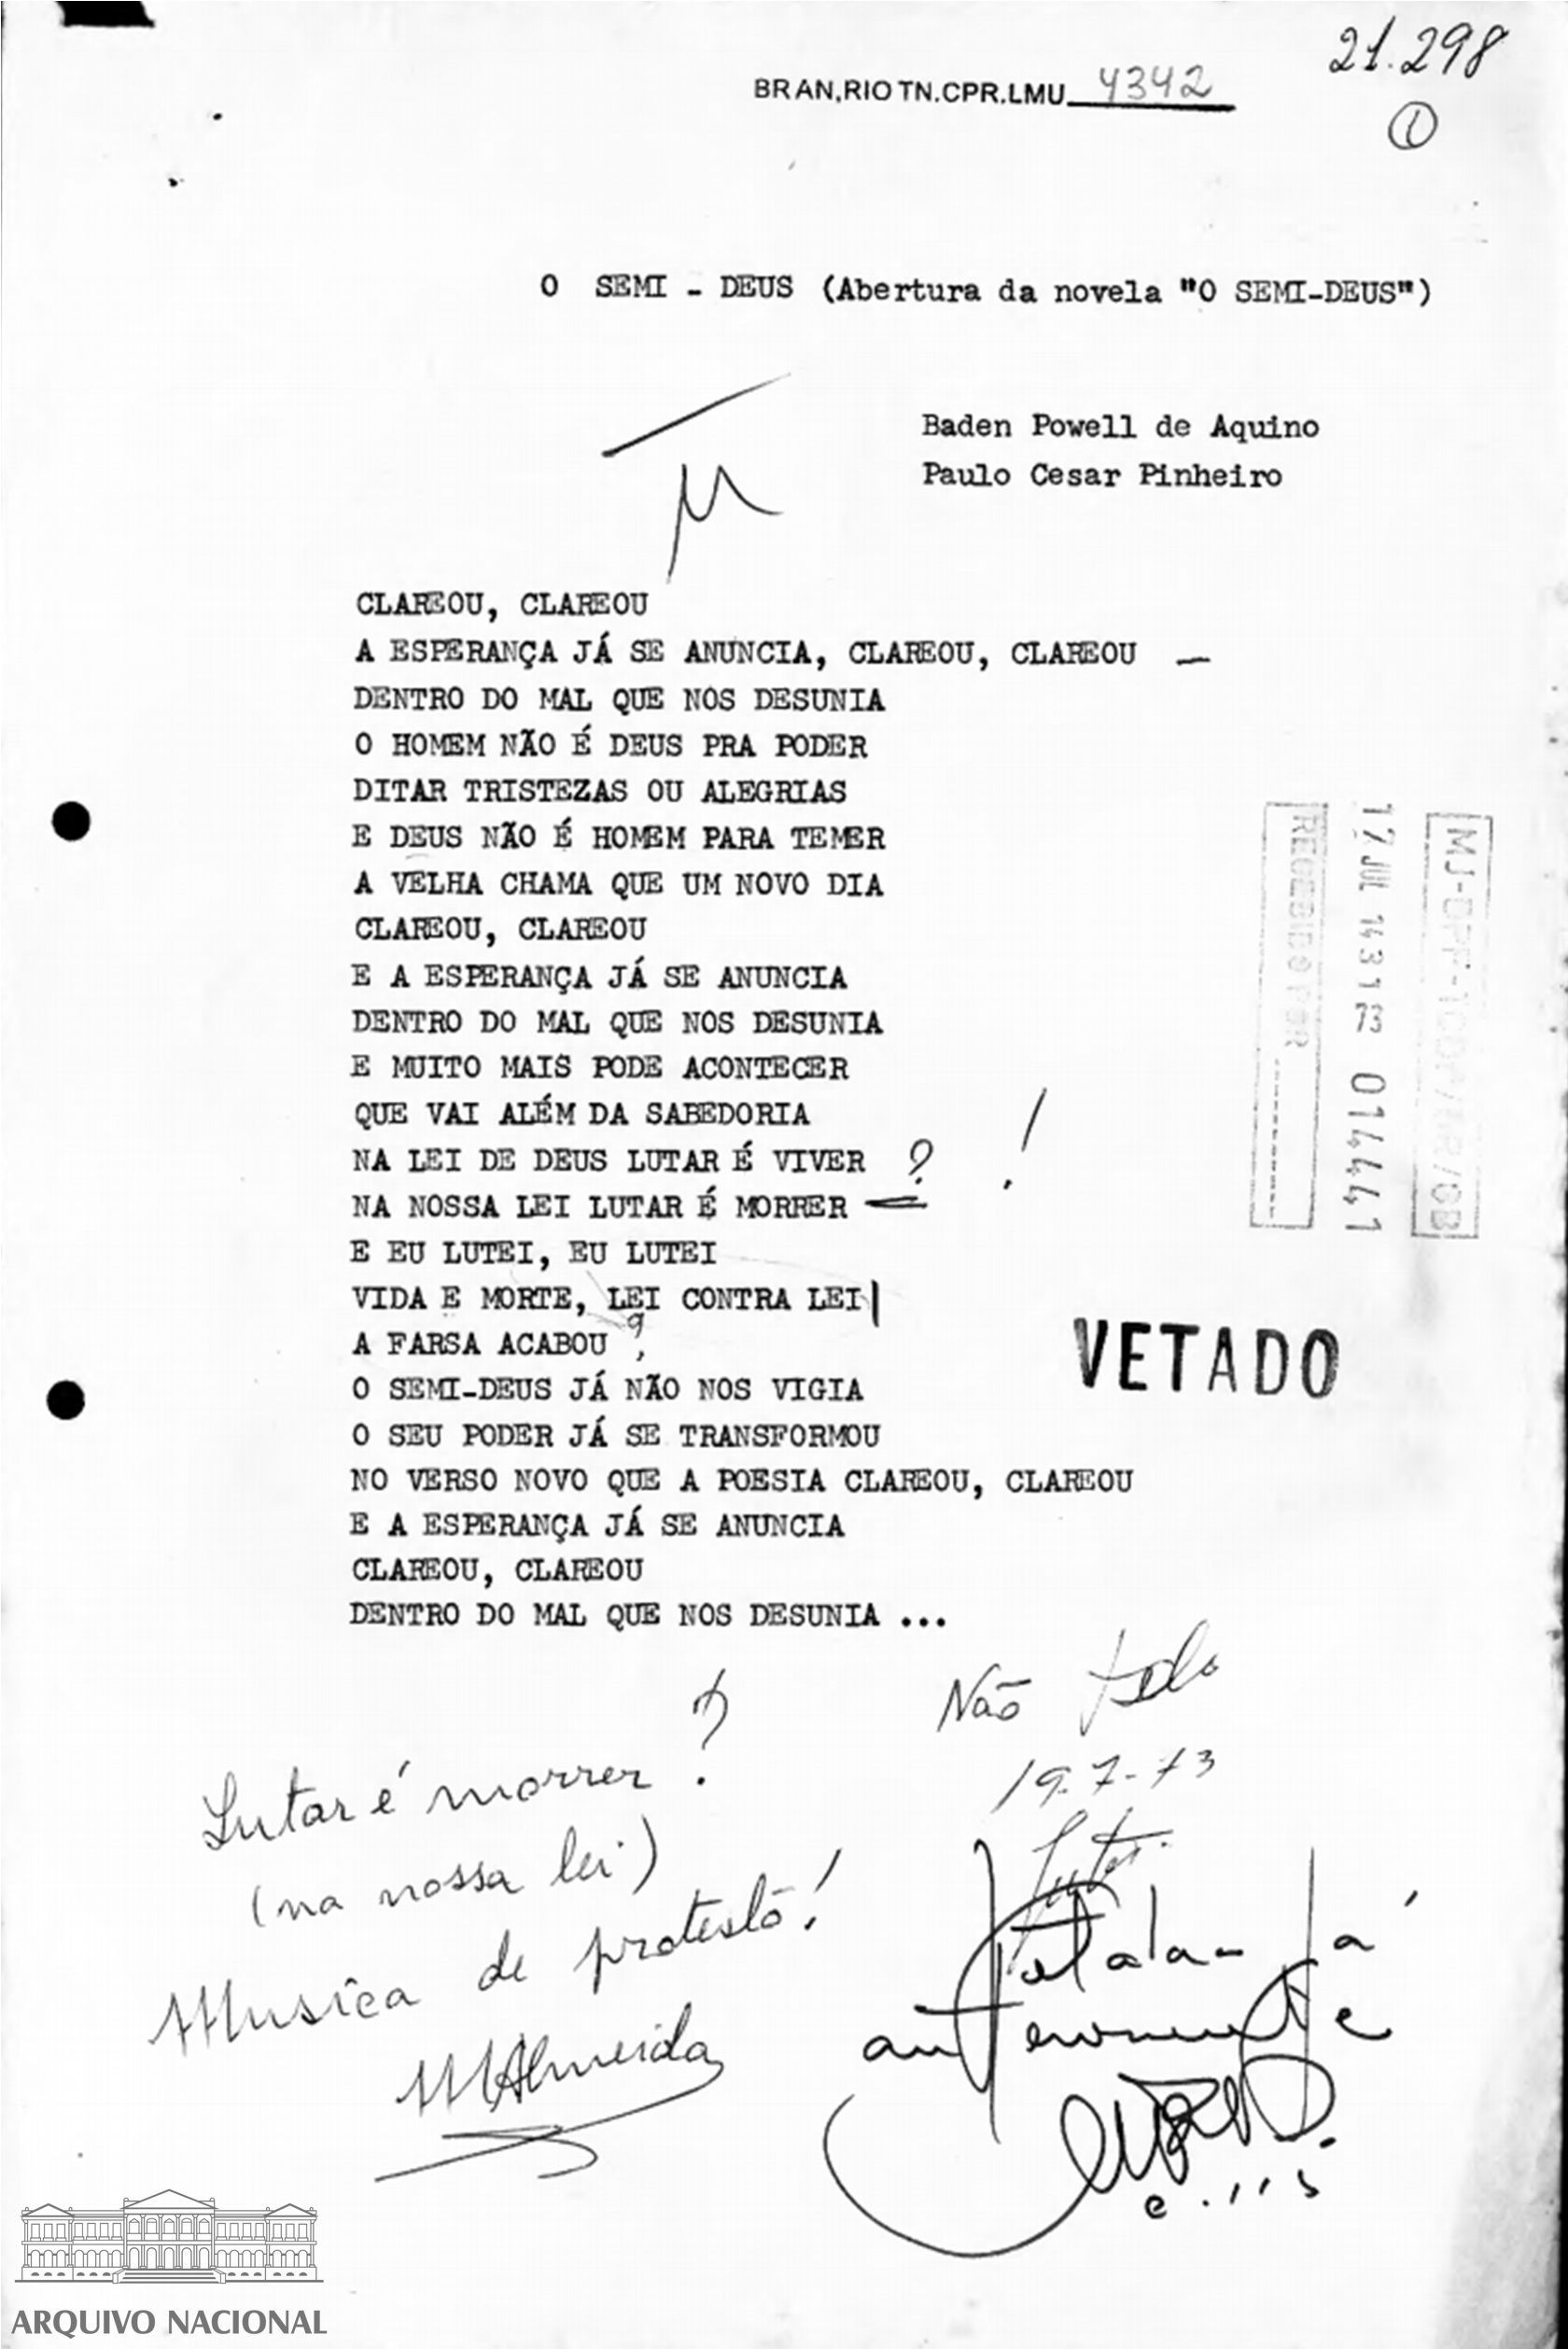 Letra da música Semi-deus, de Baden Powell e Paulo Cesar Pinheiro, vetada pela censura. Parecer de 19 de julho de 1973 (Foto: Arquivo Nacional)